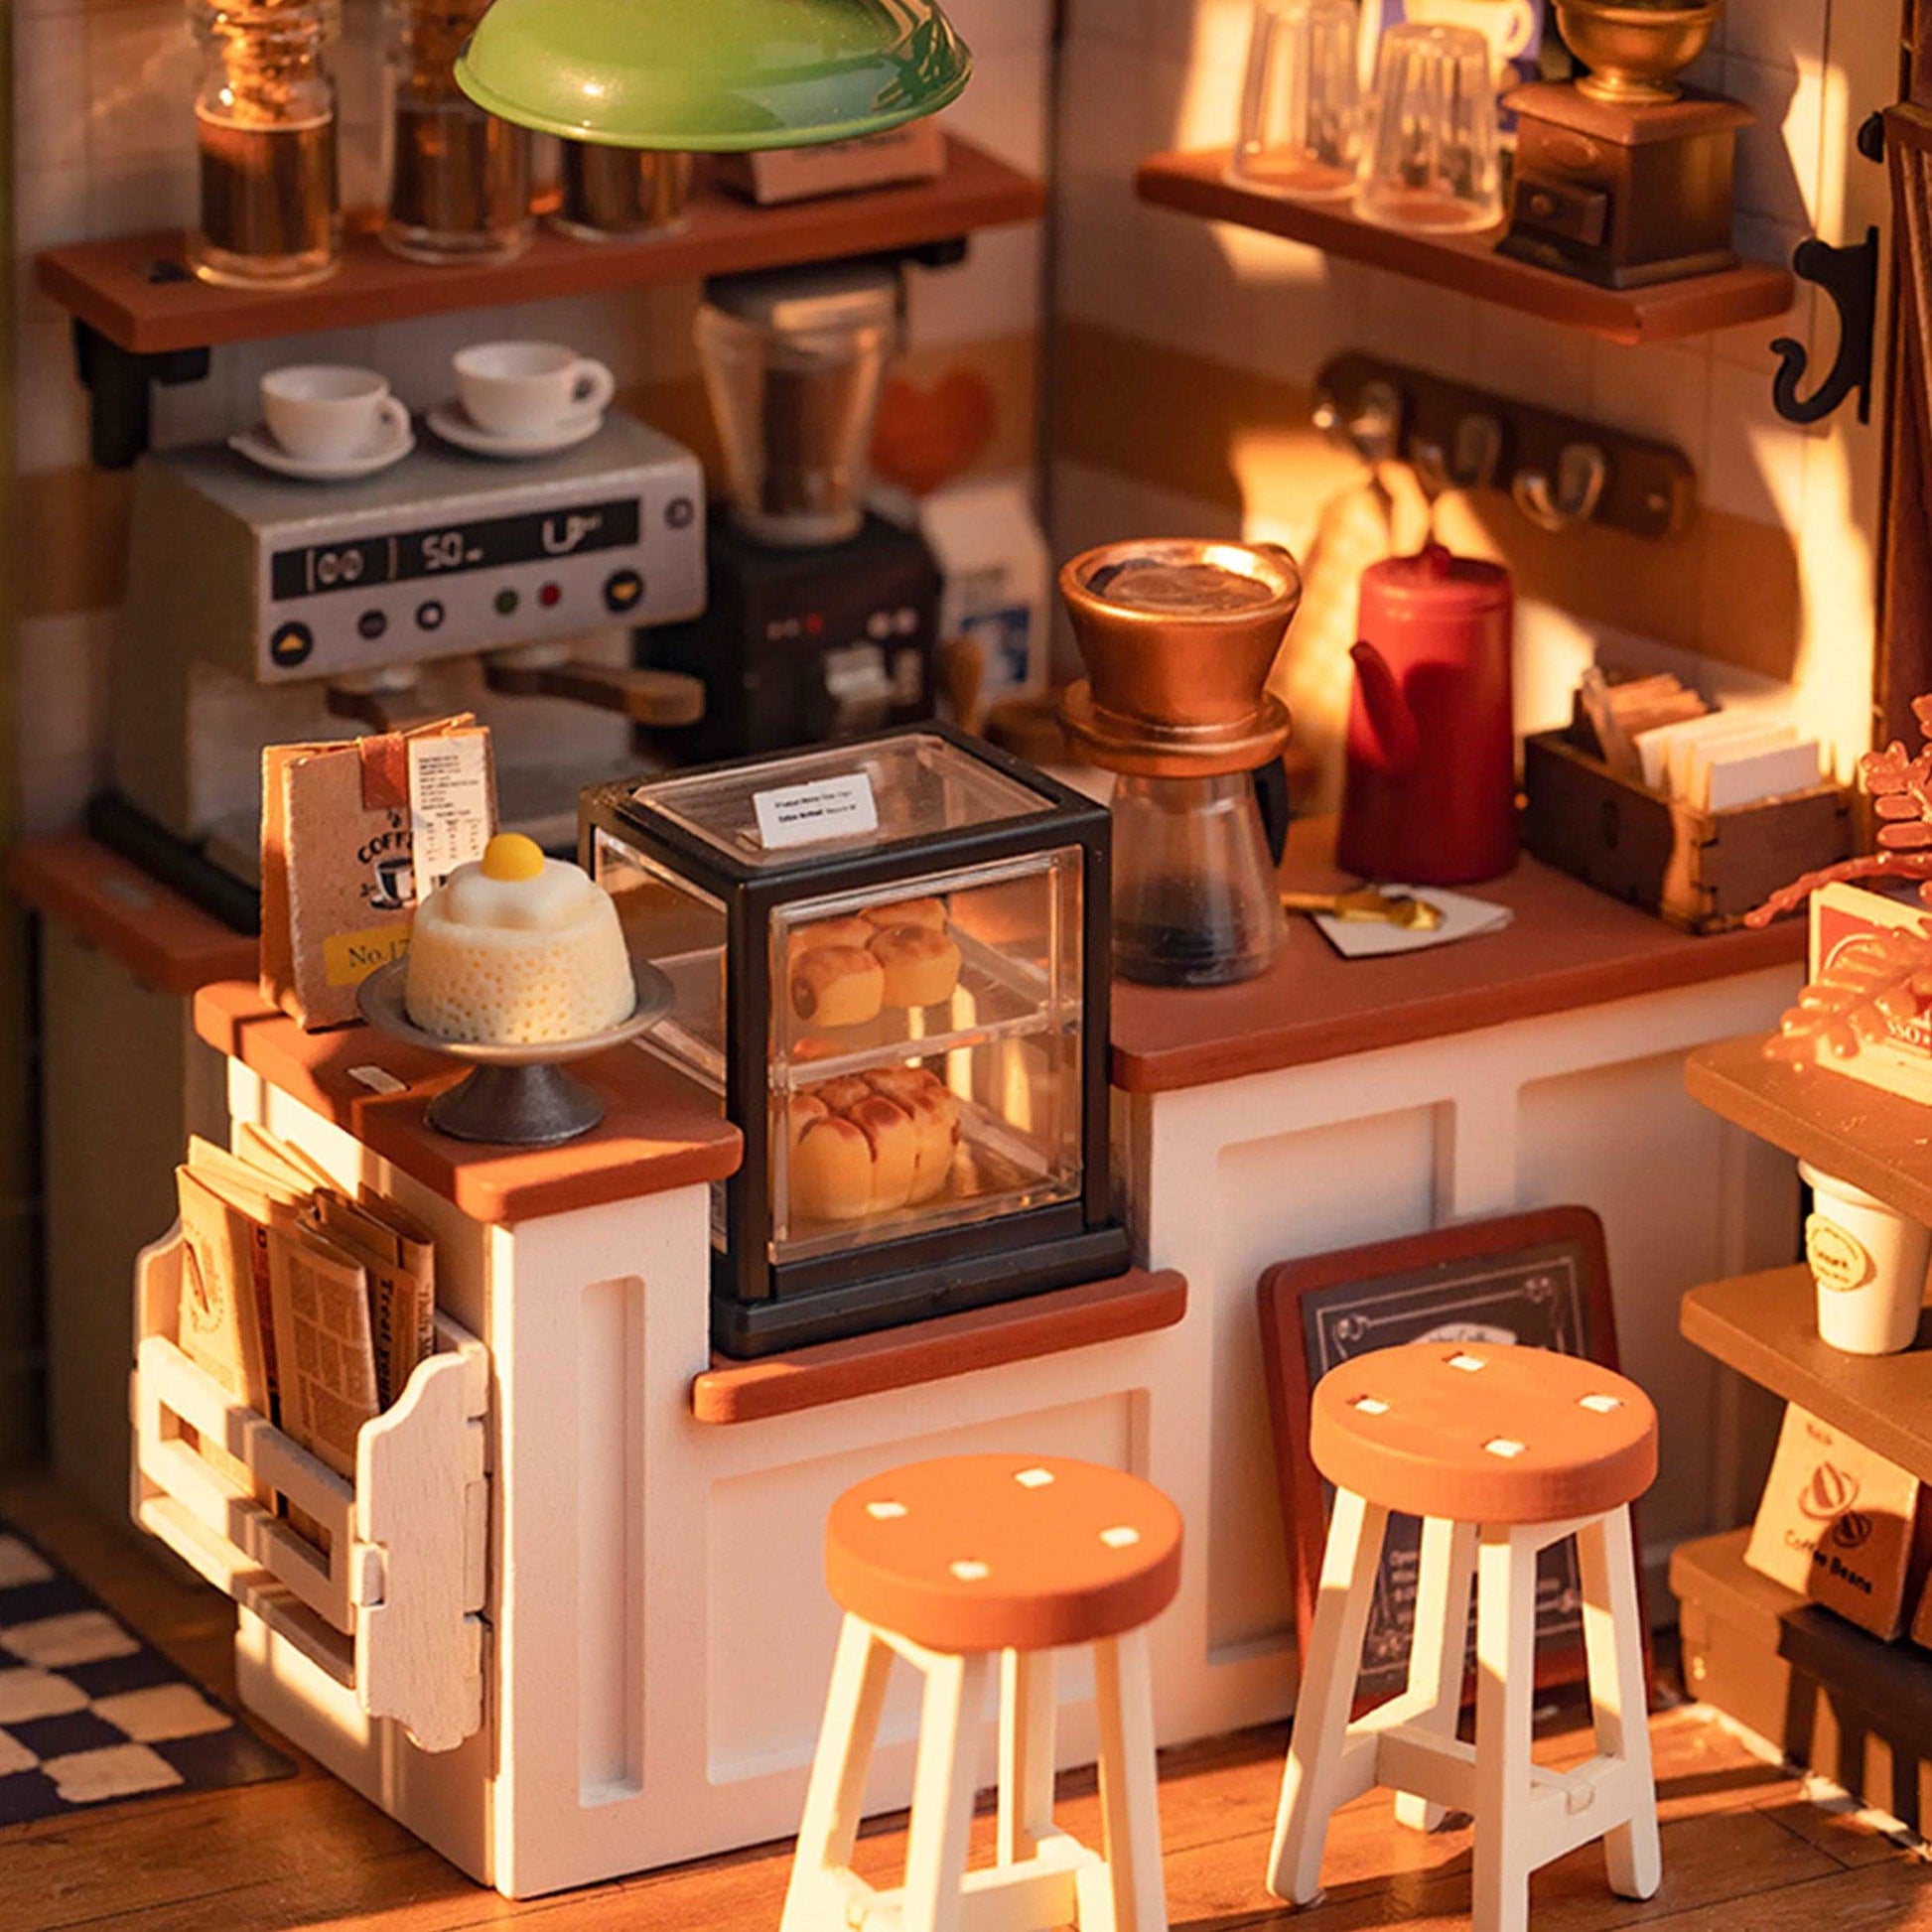 Miniaturhaus Café Nr. 17 - Robotime